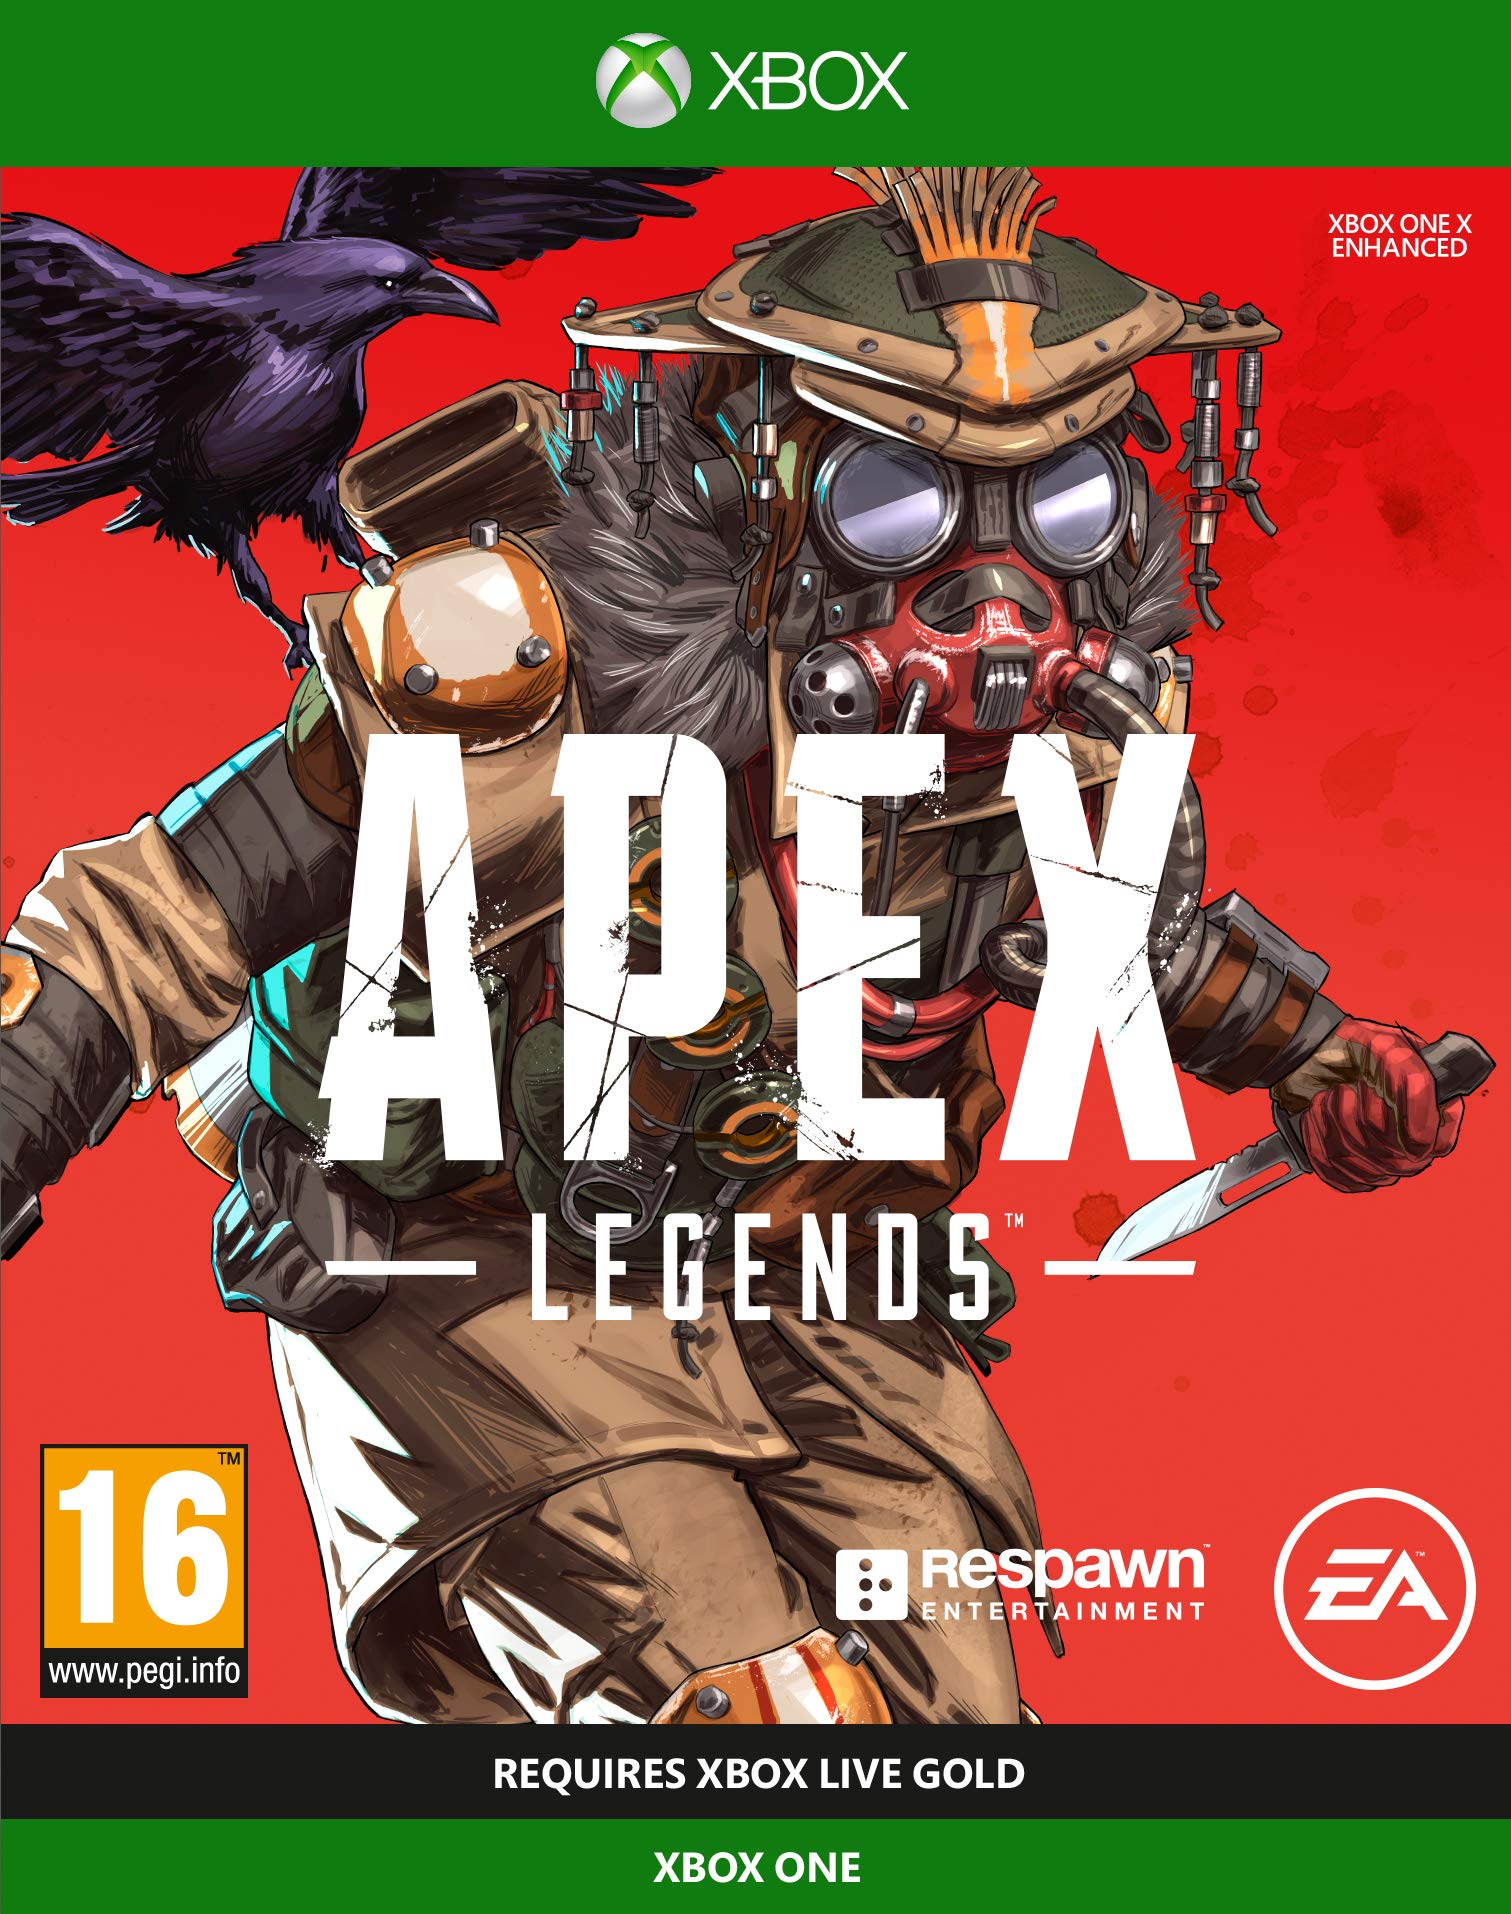 jaquette du jeu vidéo Apex Legends